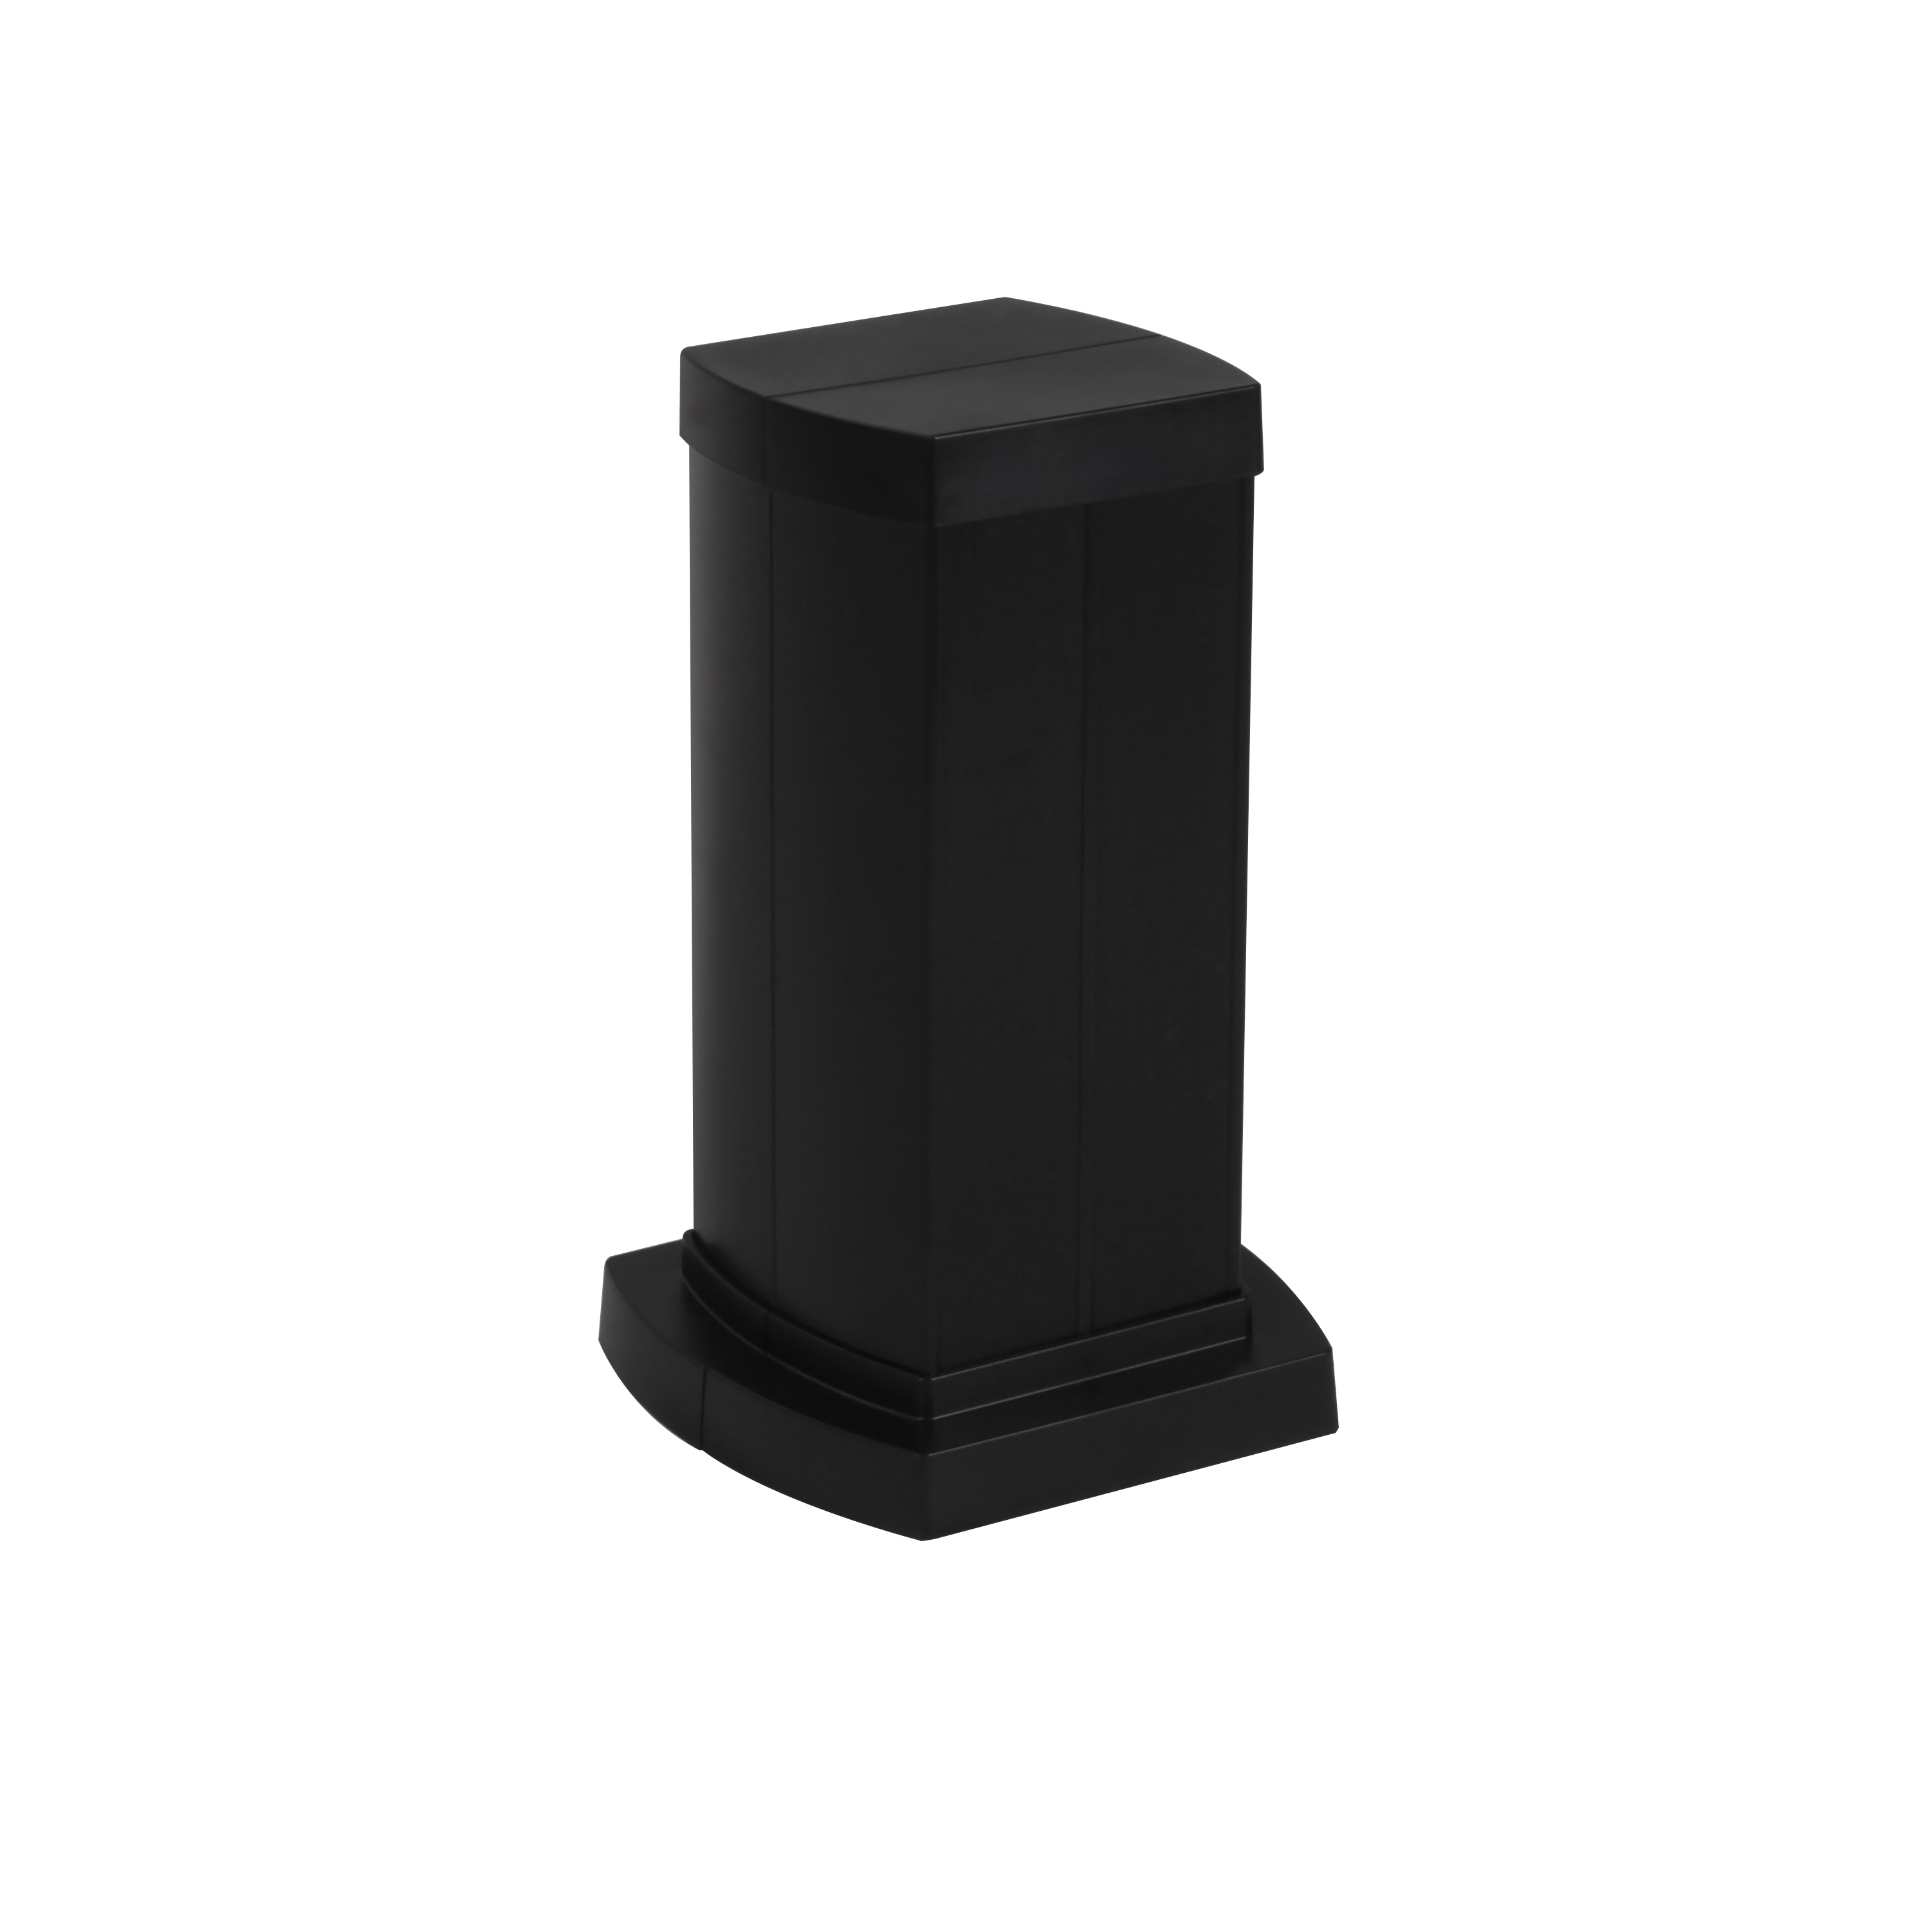 Legrand Snap-On мини-колонна алюминиевая с крышкой из пластика 4 секции, высота 0,3 метра, цвет черный